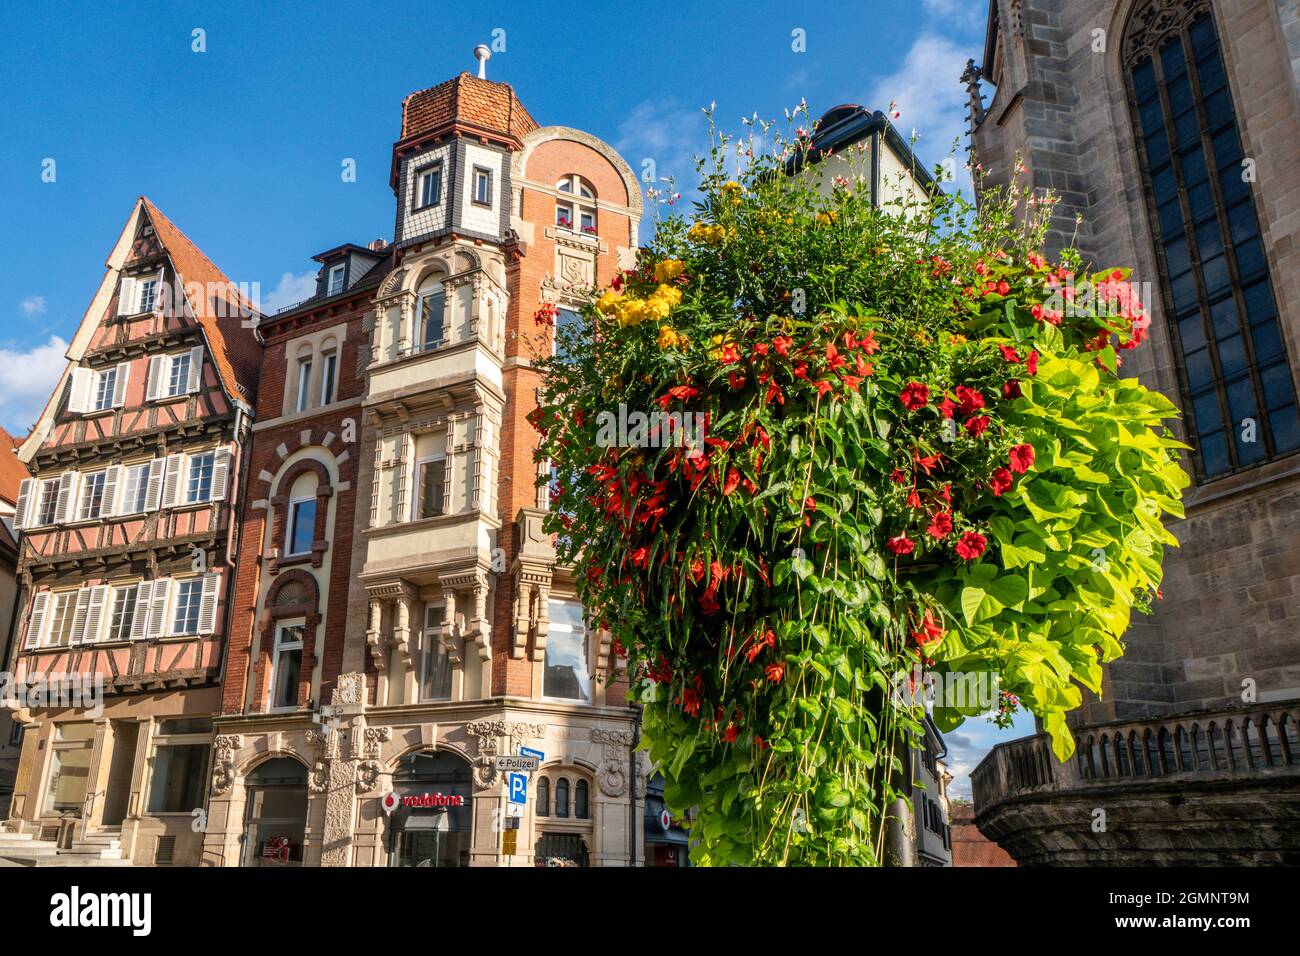 Mittelalterliche Fassaden in historischen Zentrum von Tübingen bei der Stiftskirche St. Georg, Baden Württemberg, Deutschland Stock Photo